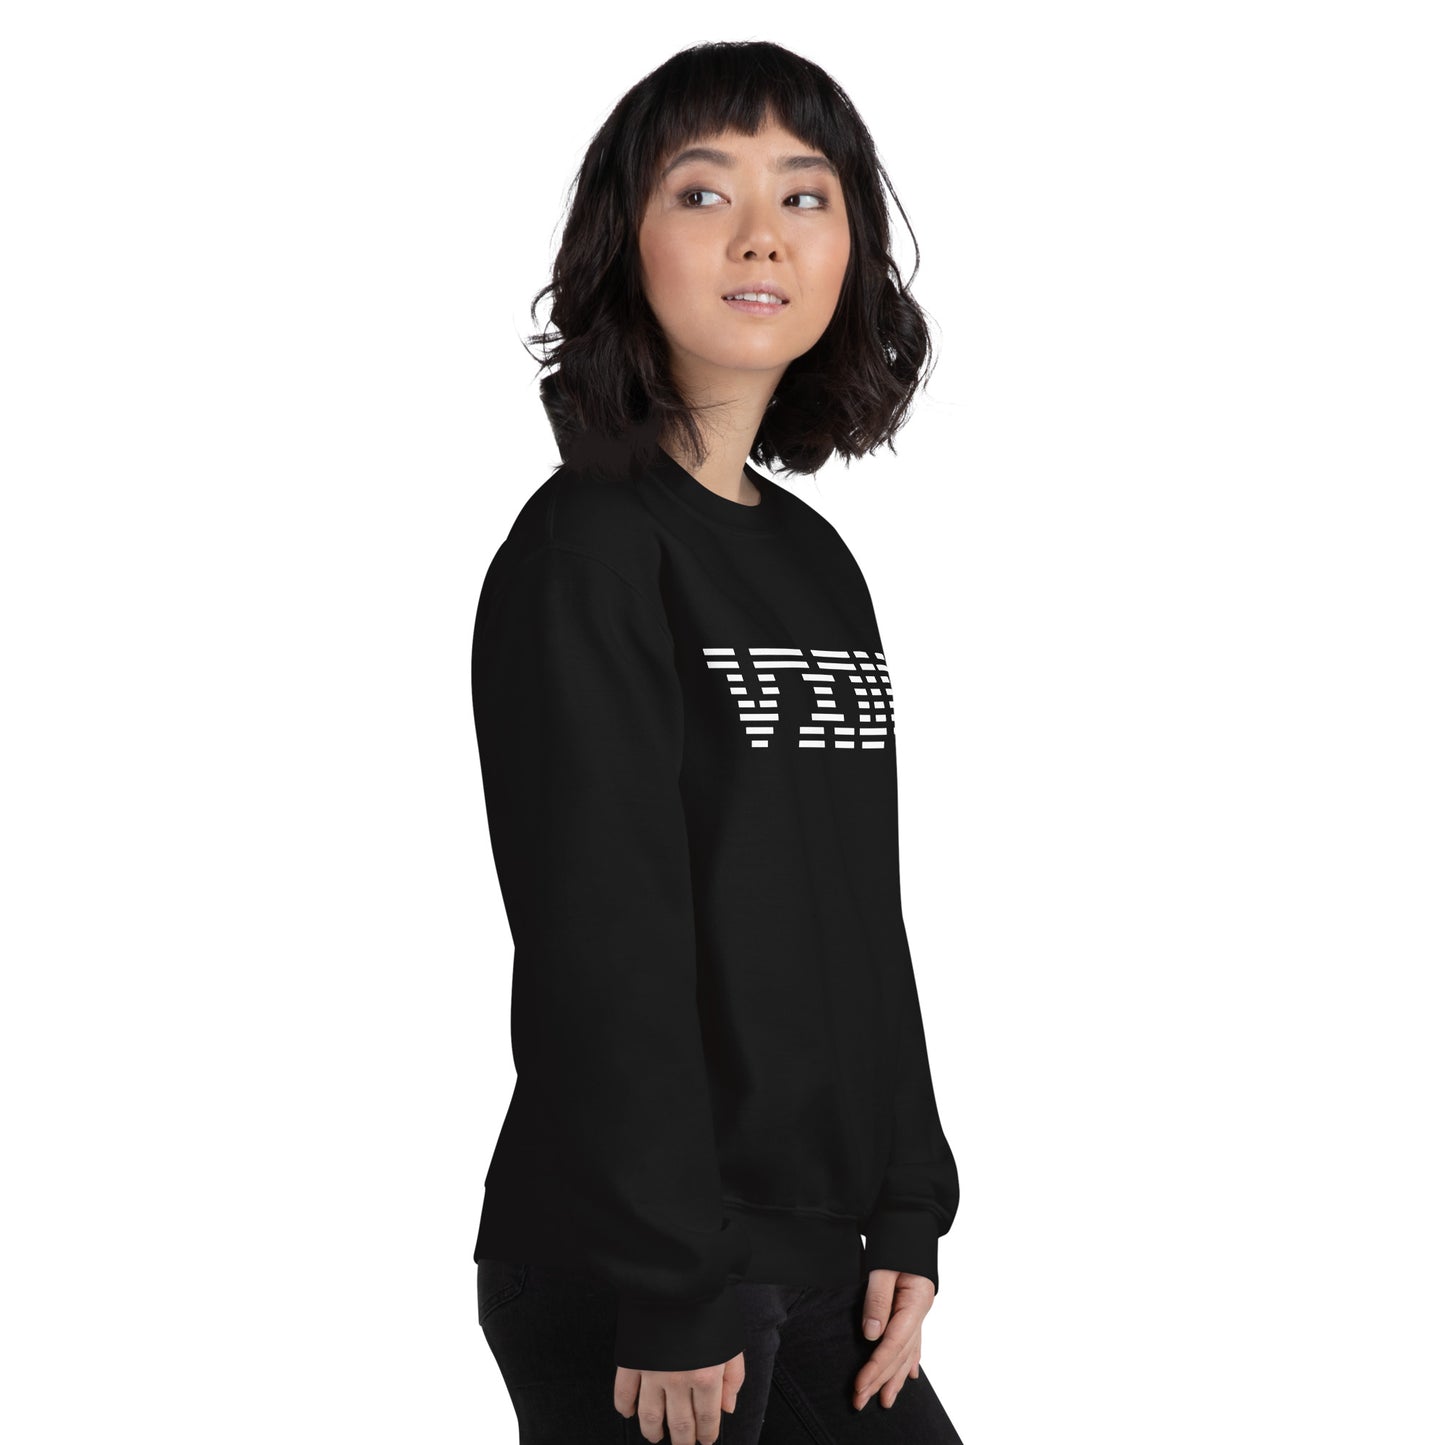 VXUG Corporate Unisex Sweatshirt